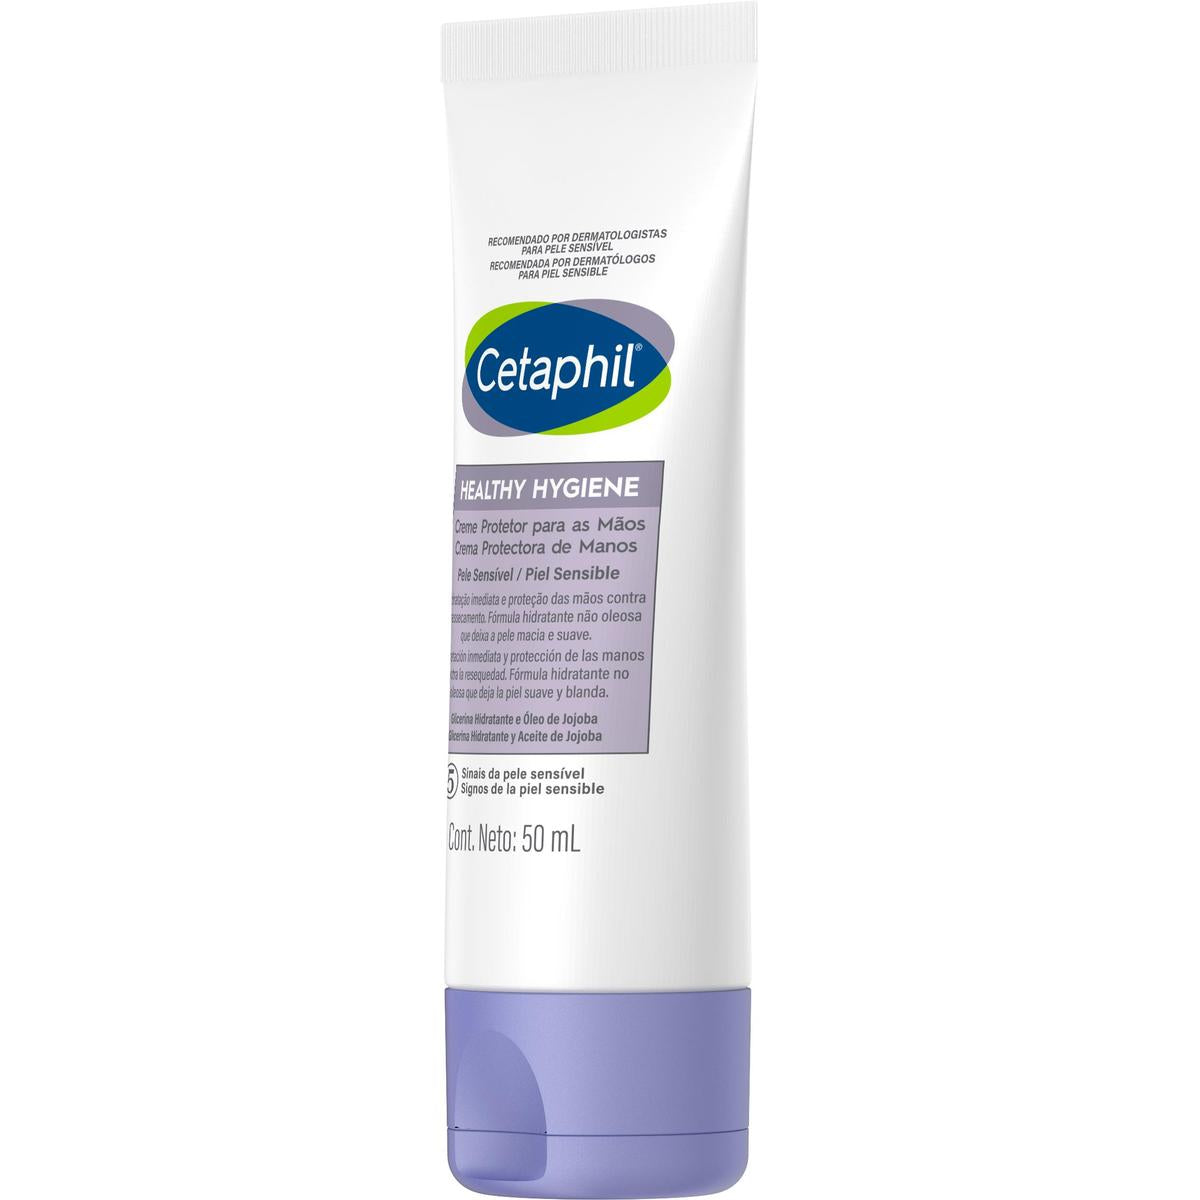 Cetaphil Healthy Hygiene, Crema protectora de manos, 50ml